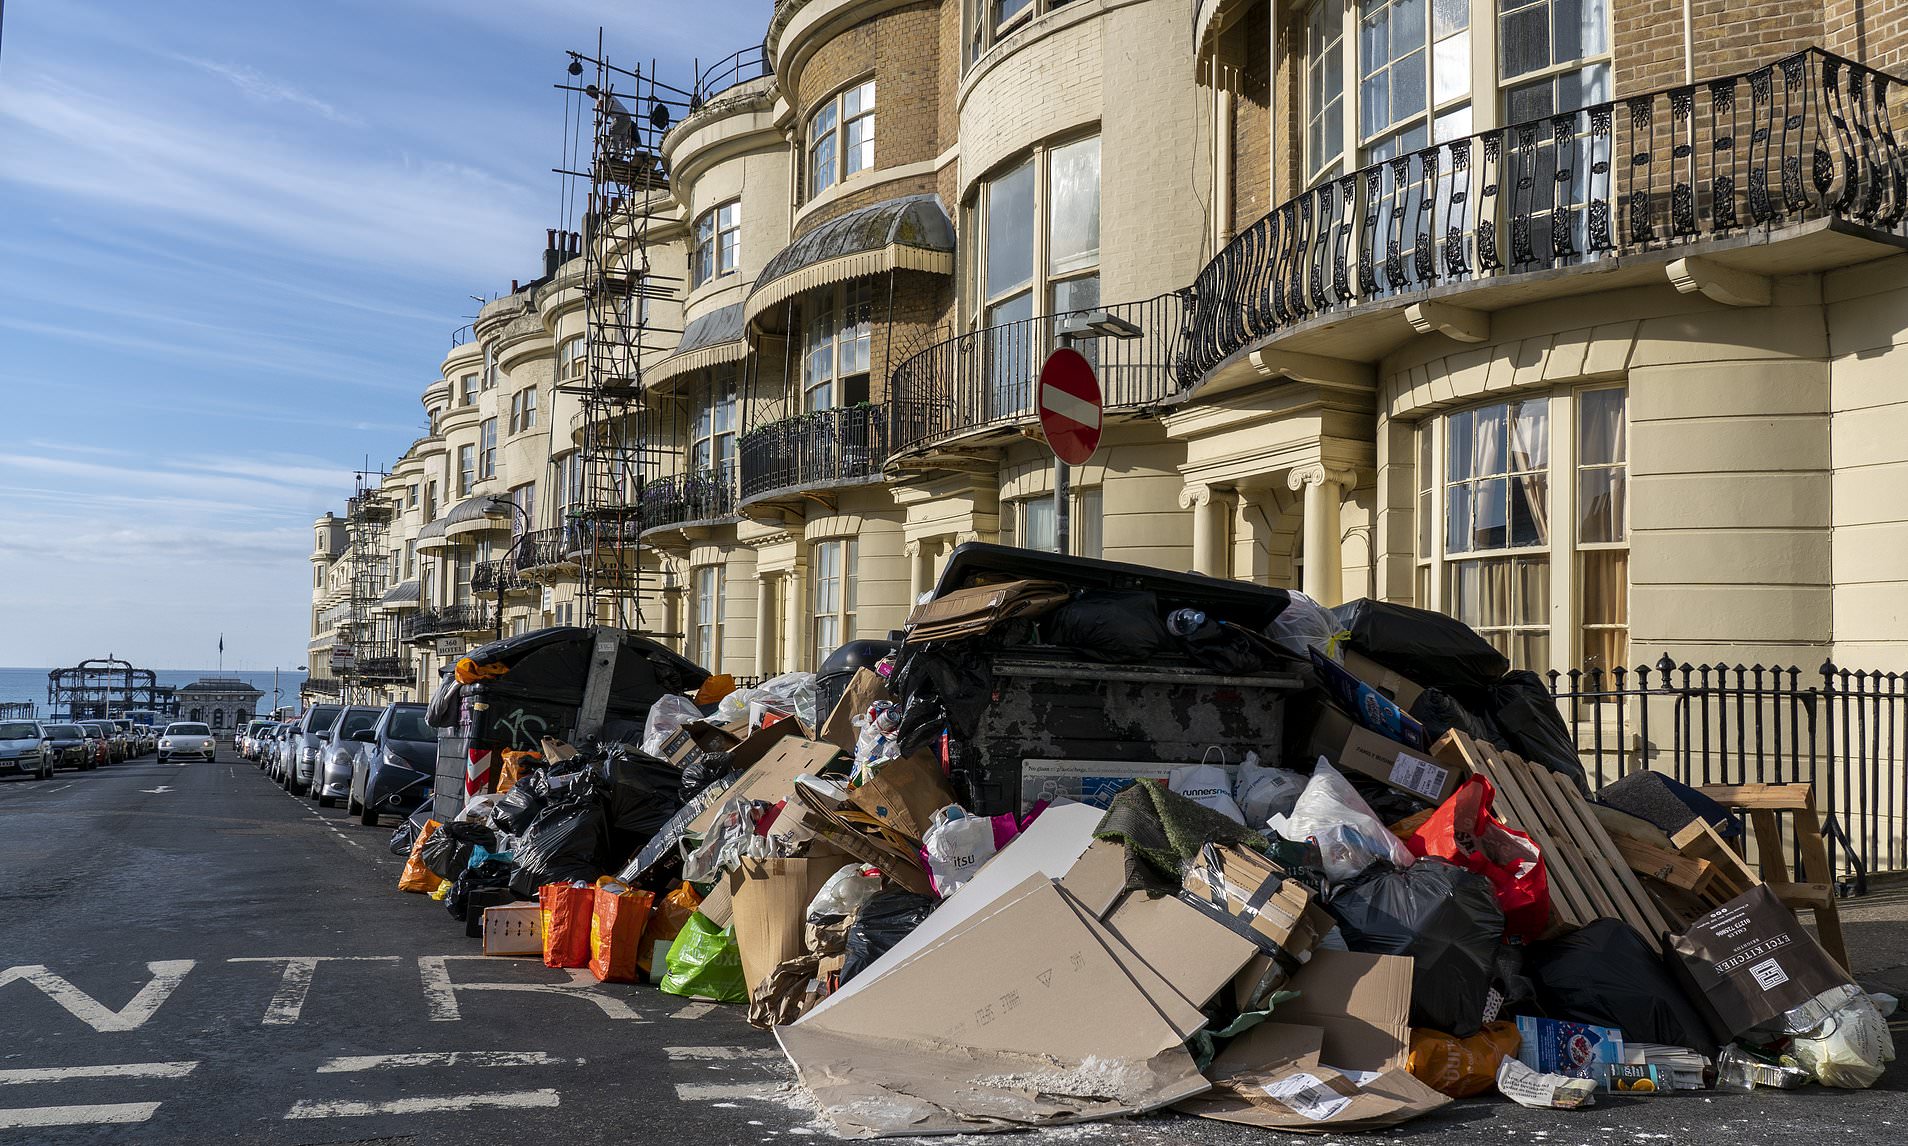 Brighton seafront rubbish